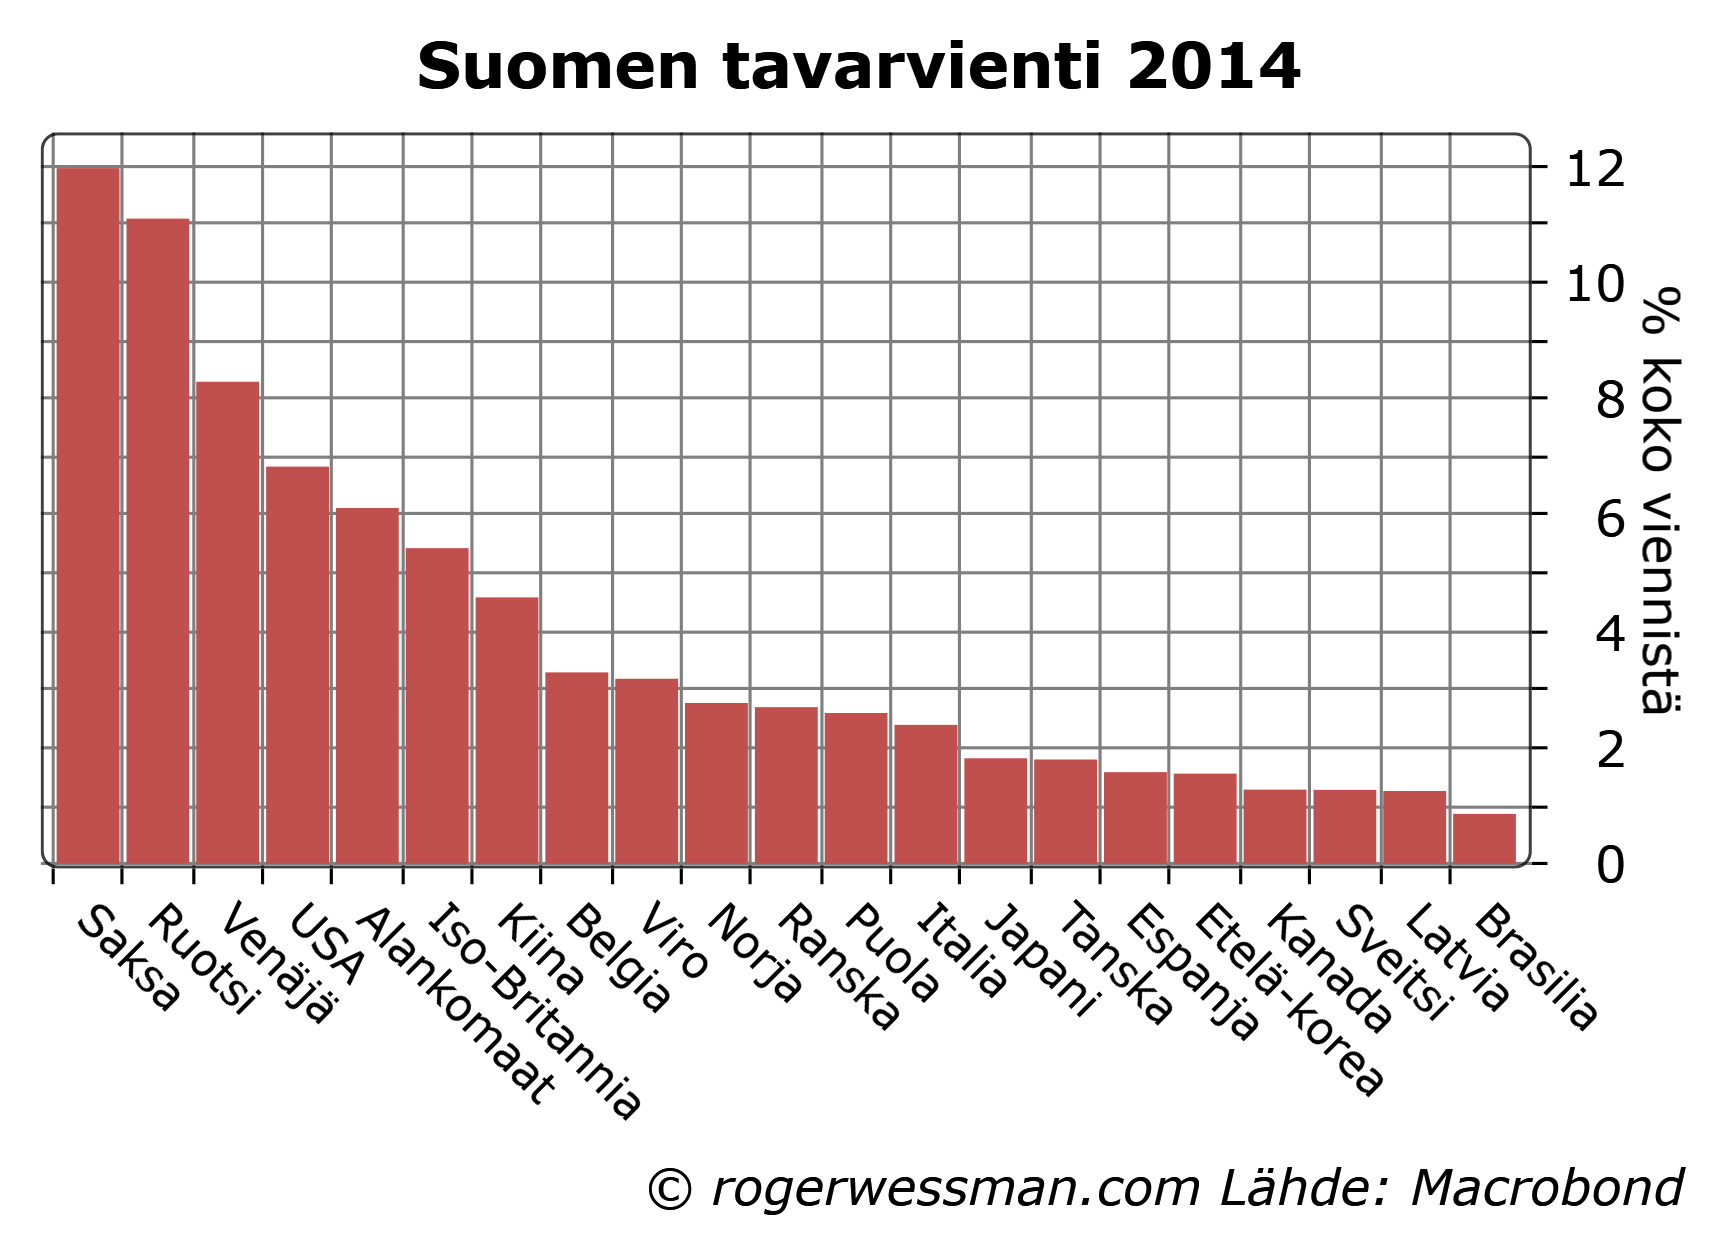 suomen-tavaraviennin-jakauma-maittain-2014.png